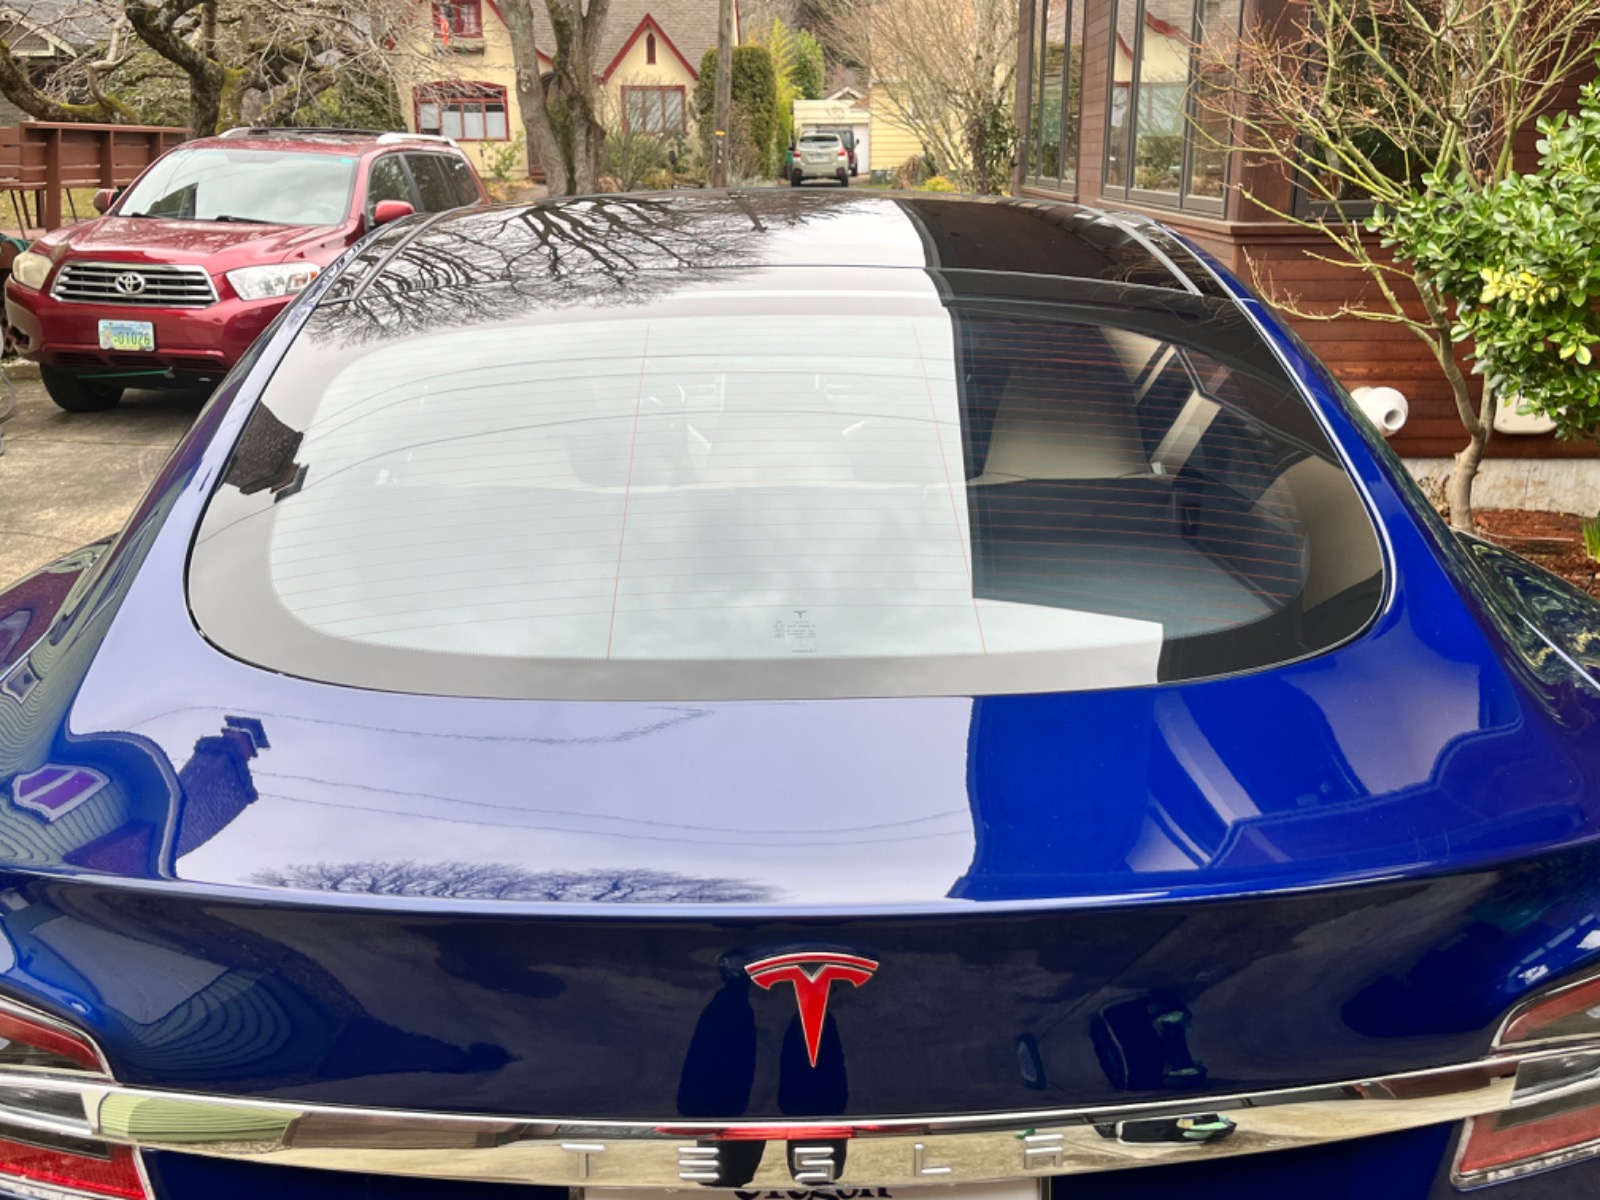 2016 Tesla Model S 75D full